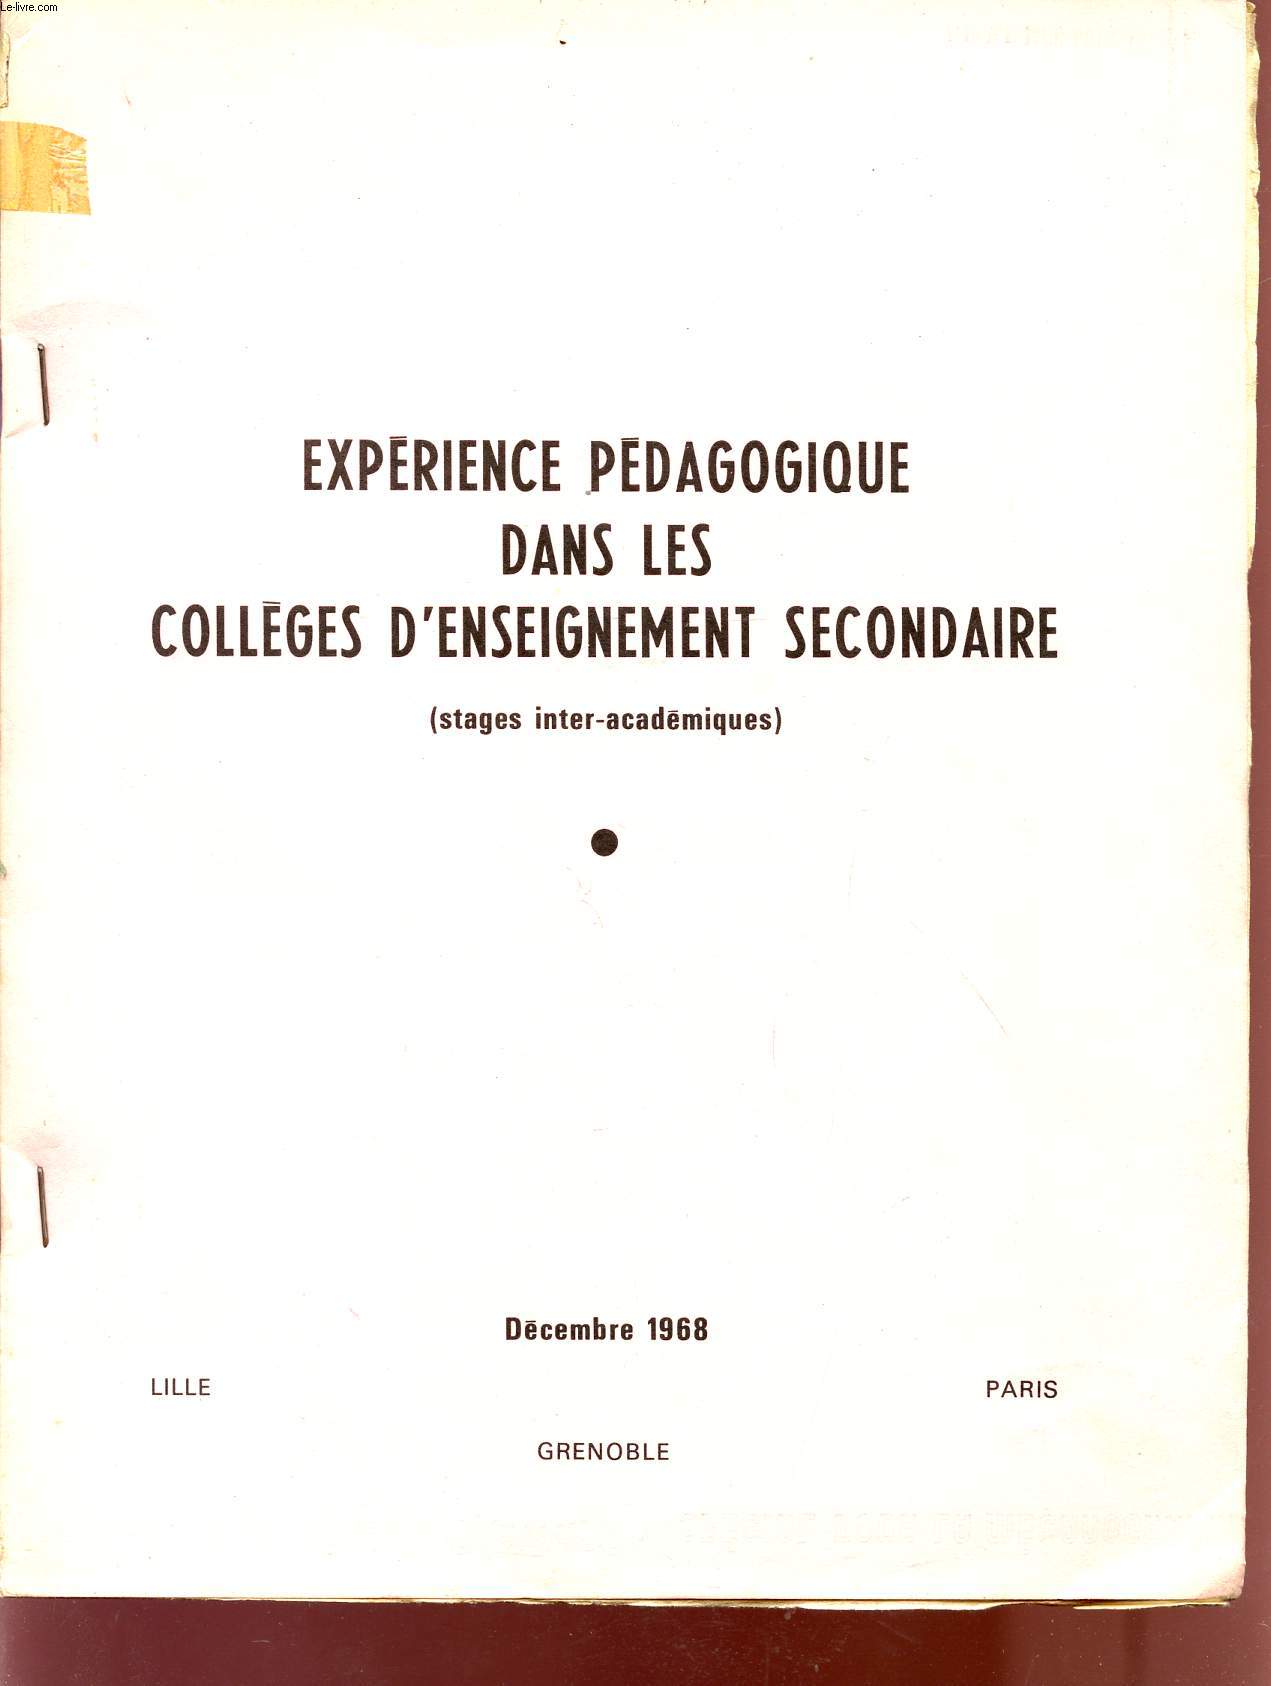 EXPERIENCE PEDAGOGIQUE DANS LES COLLEGES D'ENSEIGNEMENT SECONDAIRE / INDIVIDUALISATION DE L'ENSEIGNEMENT - ETUDE DU MILIEU / STAGES INTER-ACADEMIQUES / DECEMBRE 1968.